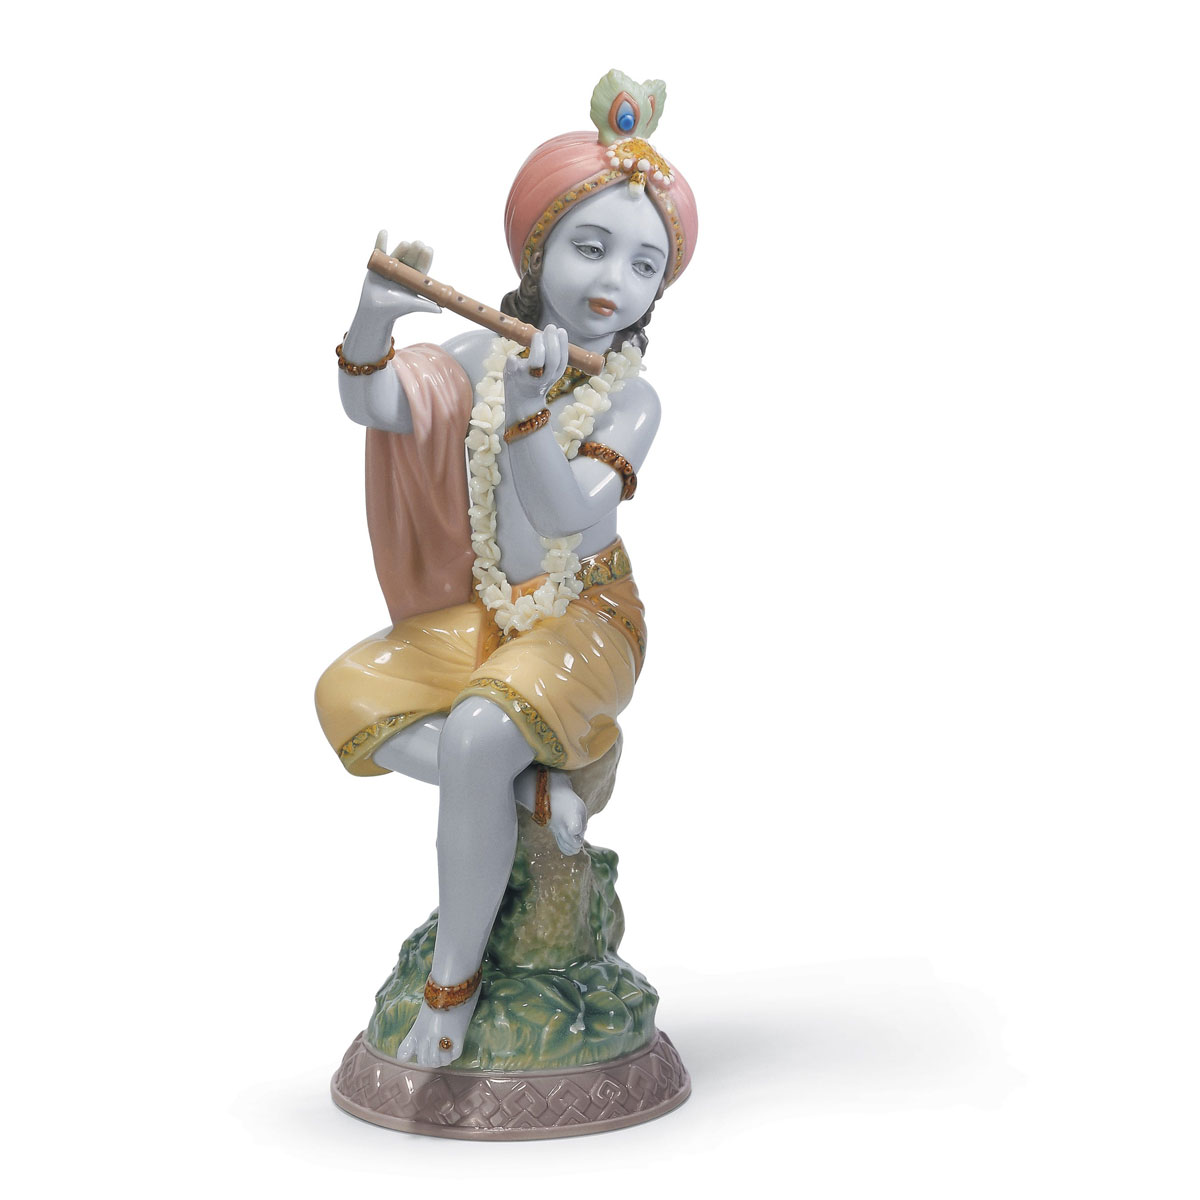 Lladro Classic Sculpture, Lord Krishna Figurine